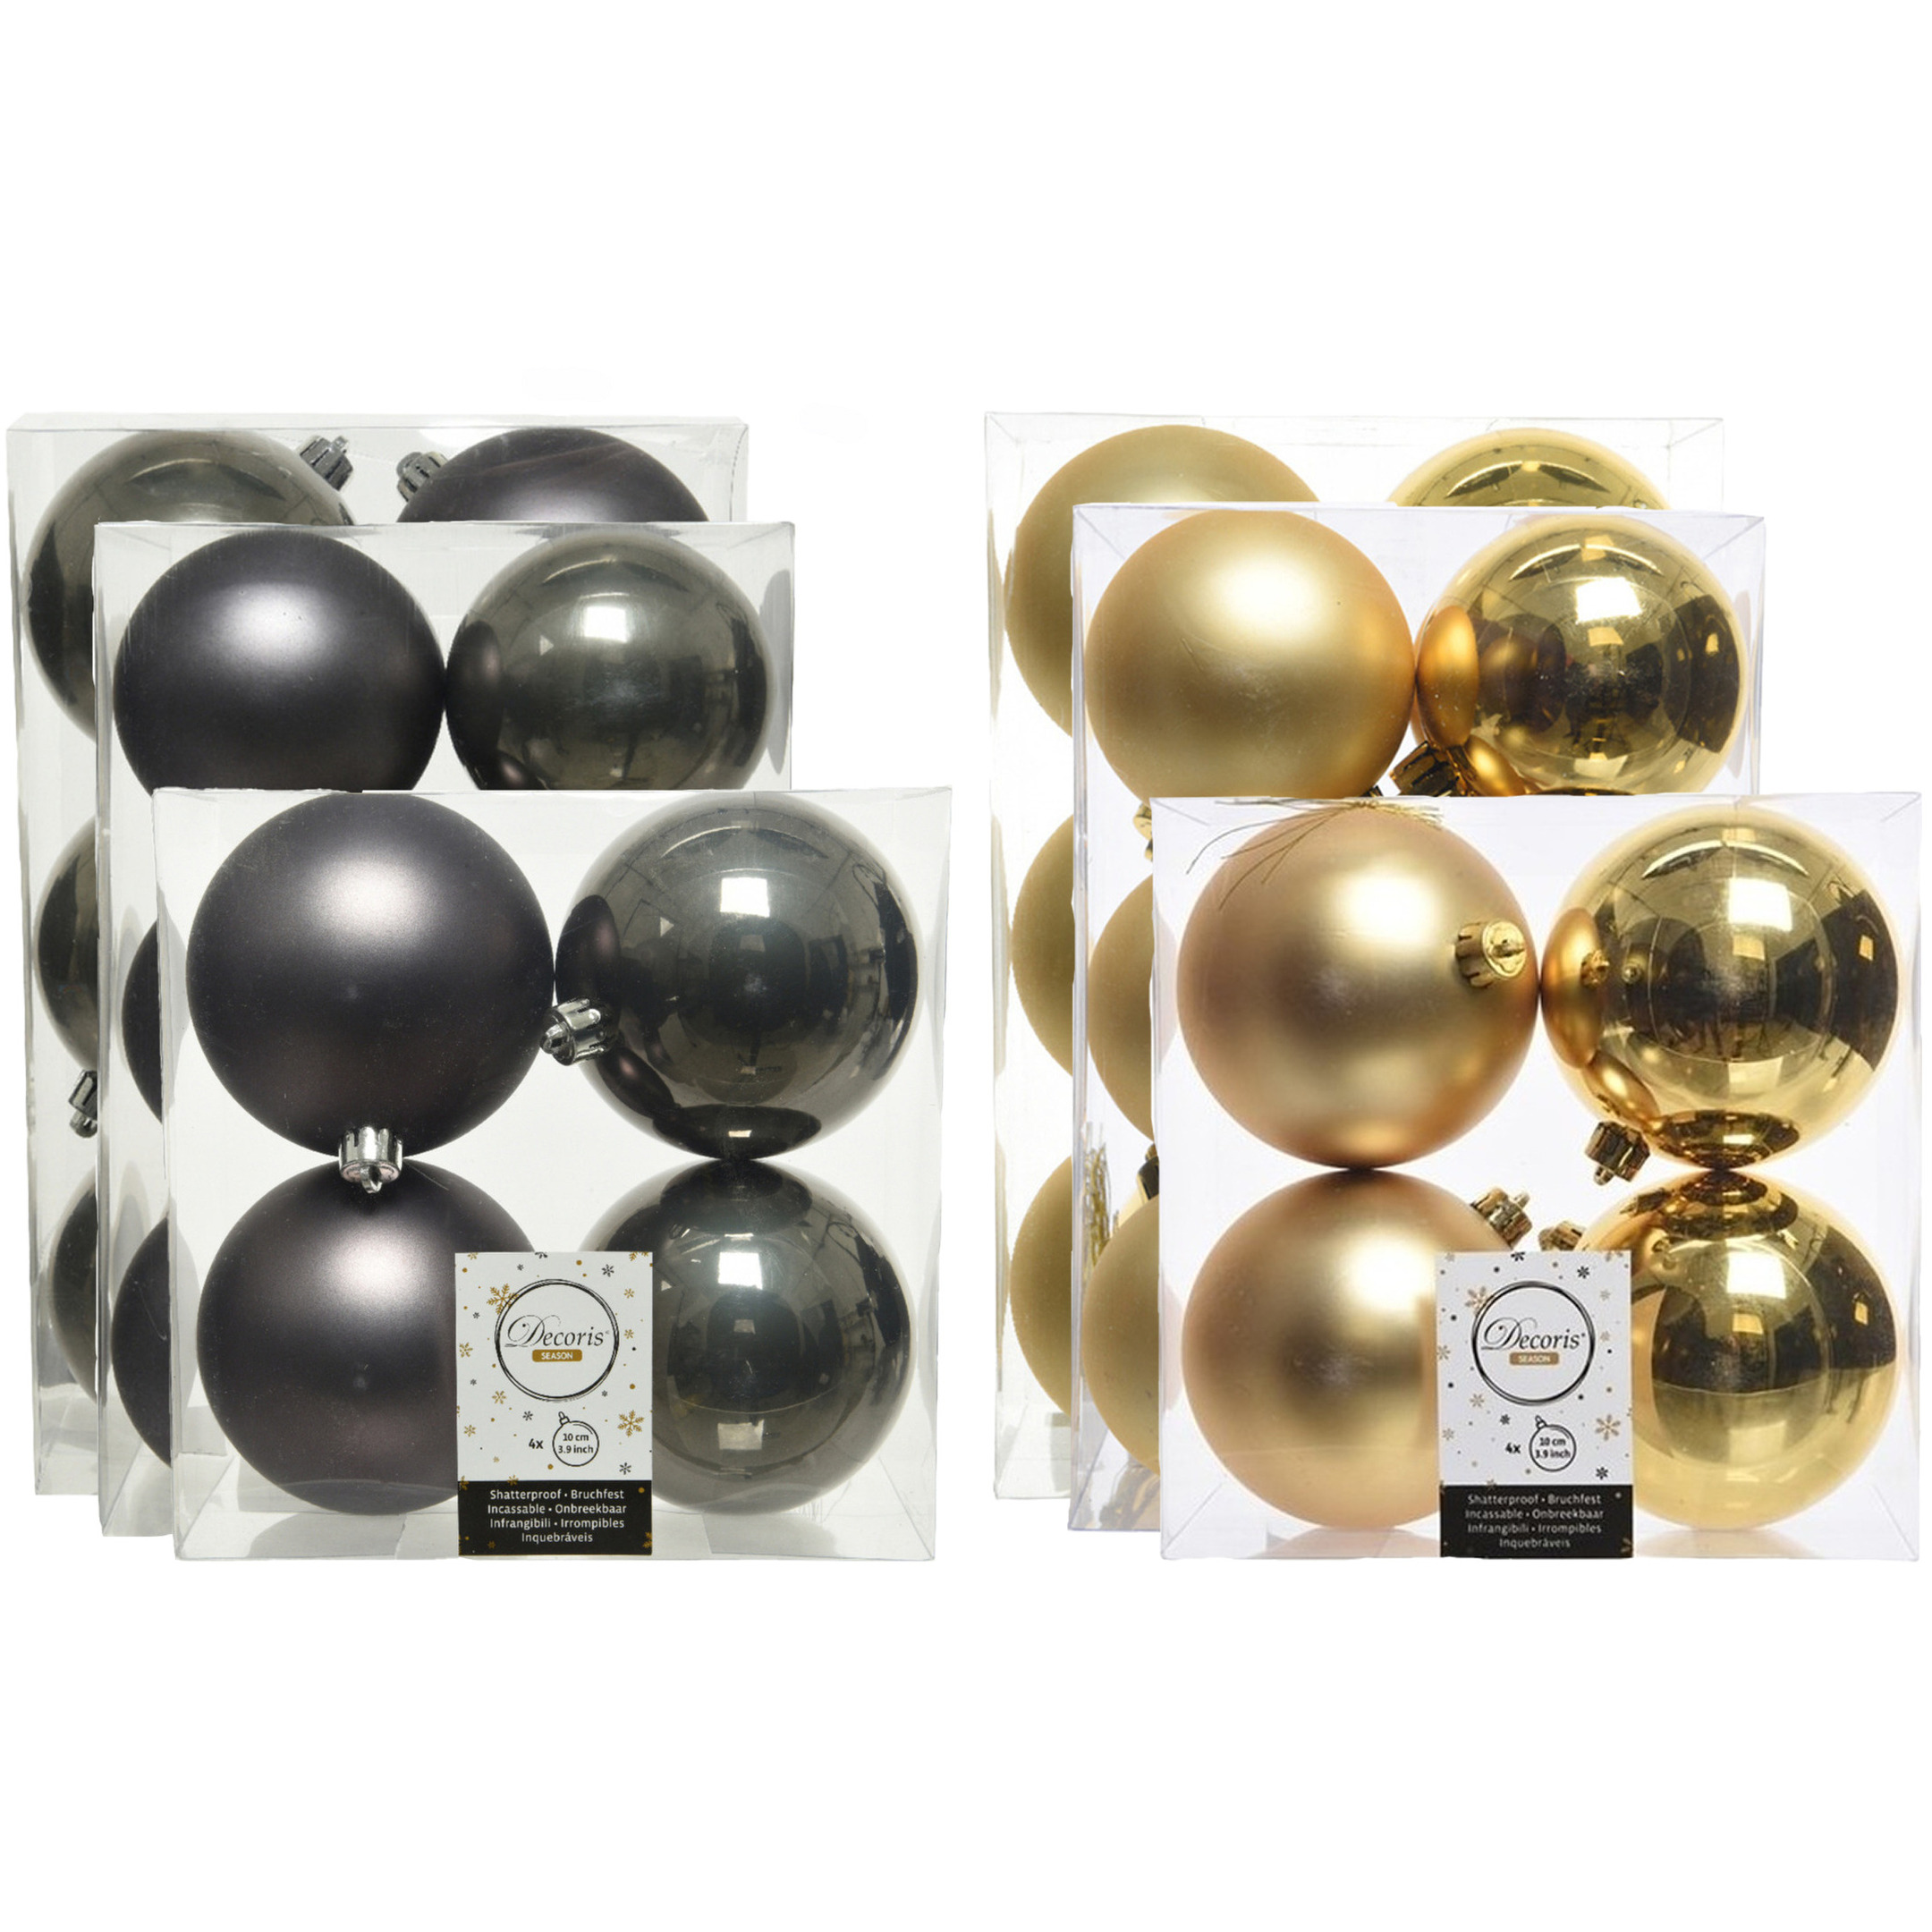 Kerstversiering kunststof kerstballen mix antraciet/goud 6-8-10 cm pakket van 44x stuks -